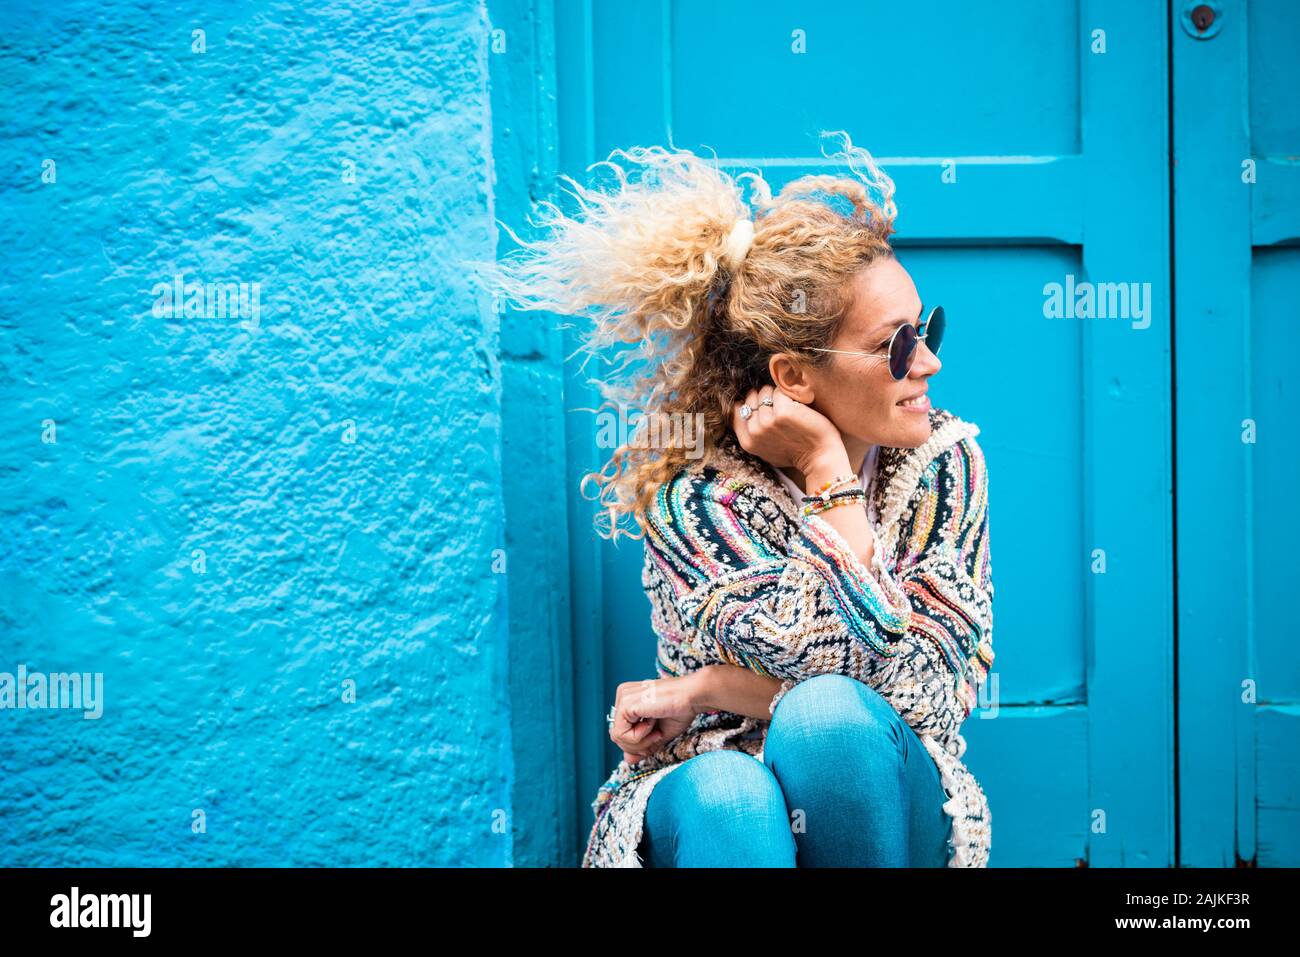 Farbige und trendigen Lifestyle Fashion Portrait von schönen jungen kaukasischen mittleren Alter Frau auf der Suche auf der linken Seite - Blau traditionelle alte Home backgrou Stockfoto